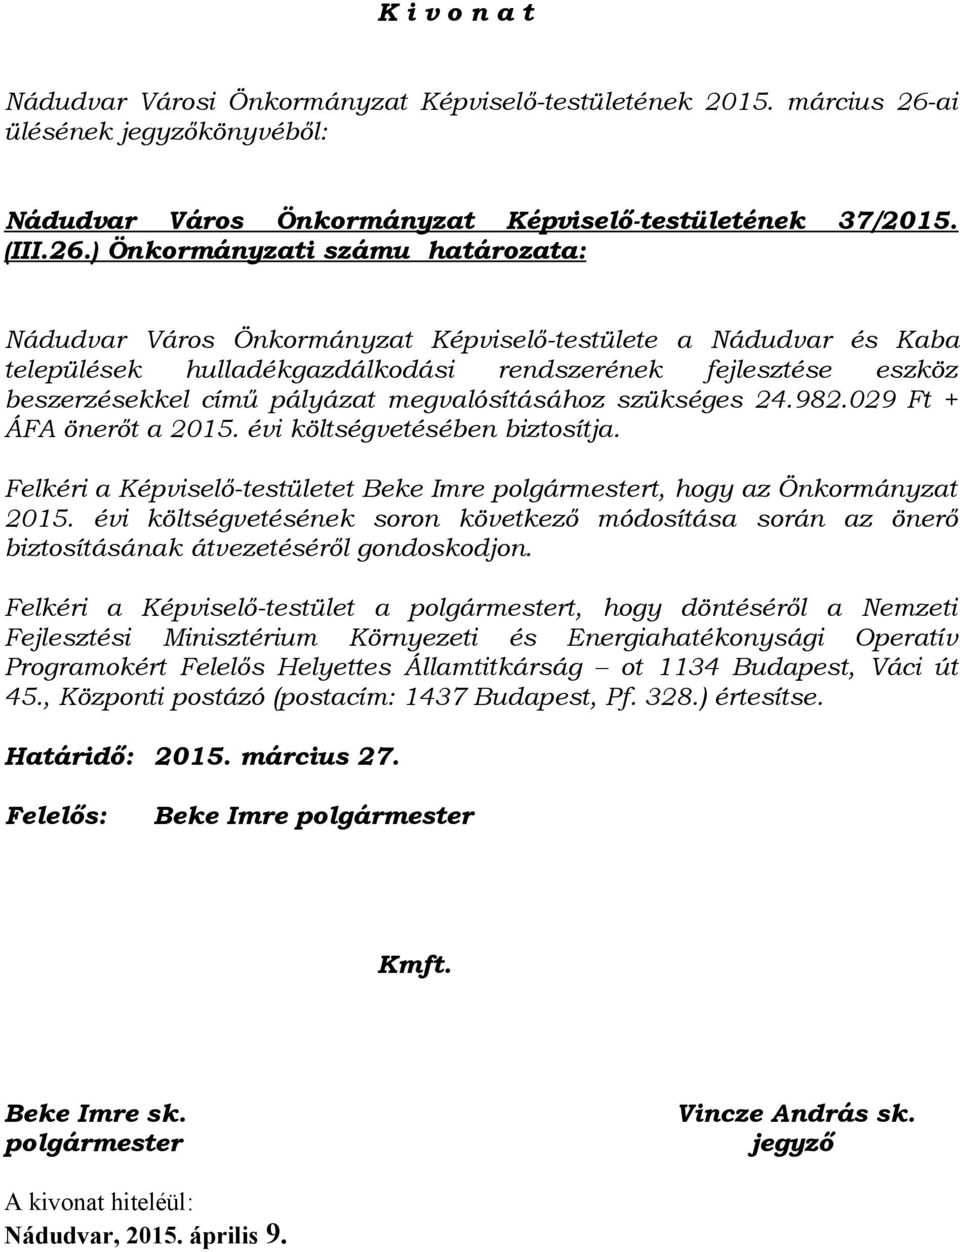 ) Önkormányzati számu határozata: Nádudvar Város Önkormányzat Képviselő-testülete a Nádudvar és Kaba települések hulladékgazdálkodási rendszerének fejlesztése eszköz beszerzésekkel című pályázat